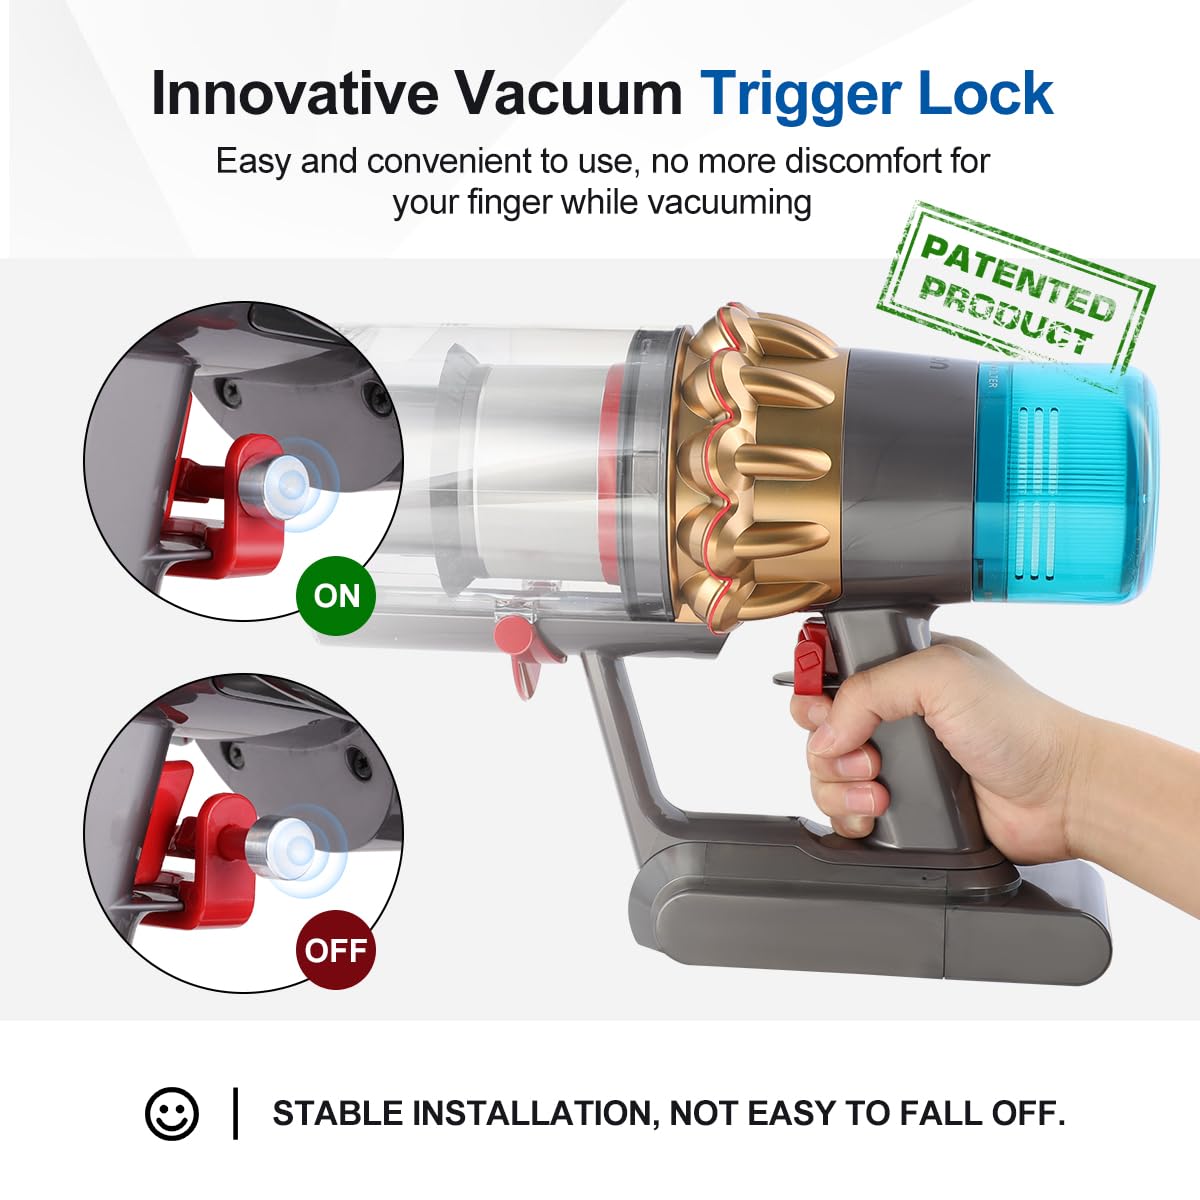 Innovative Vacuum Trigger Lock